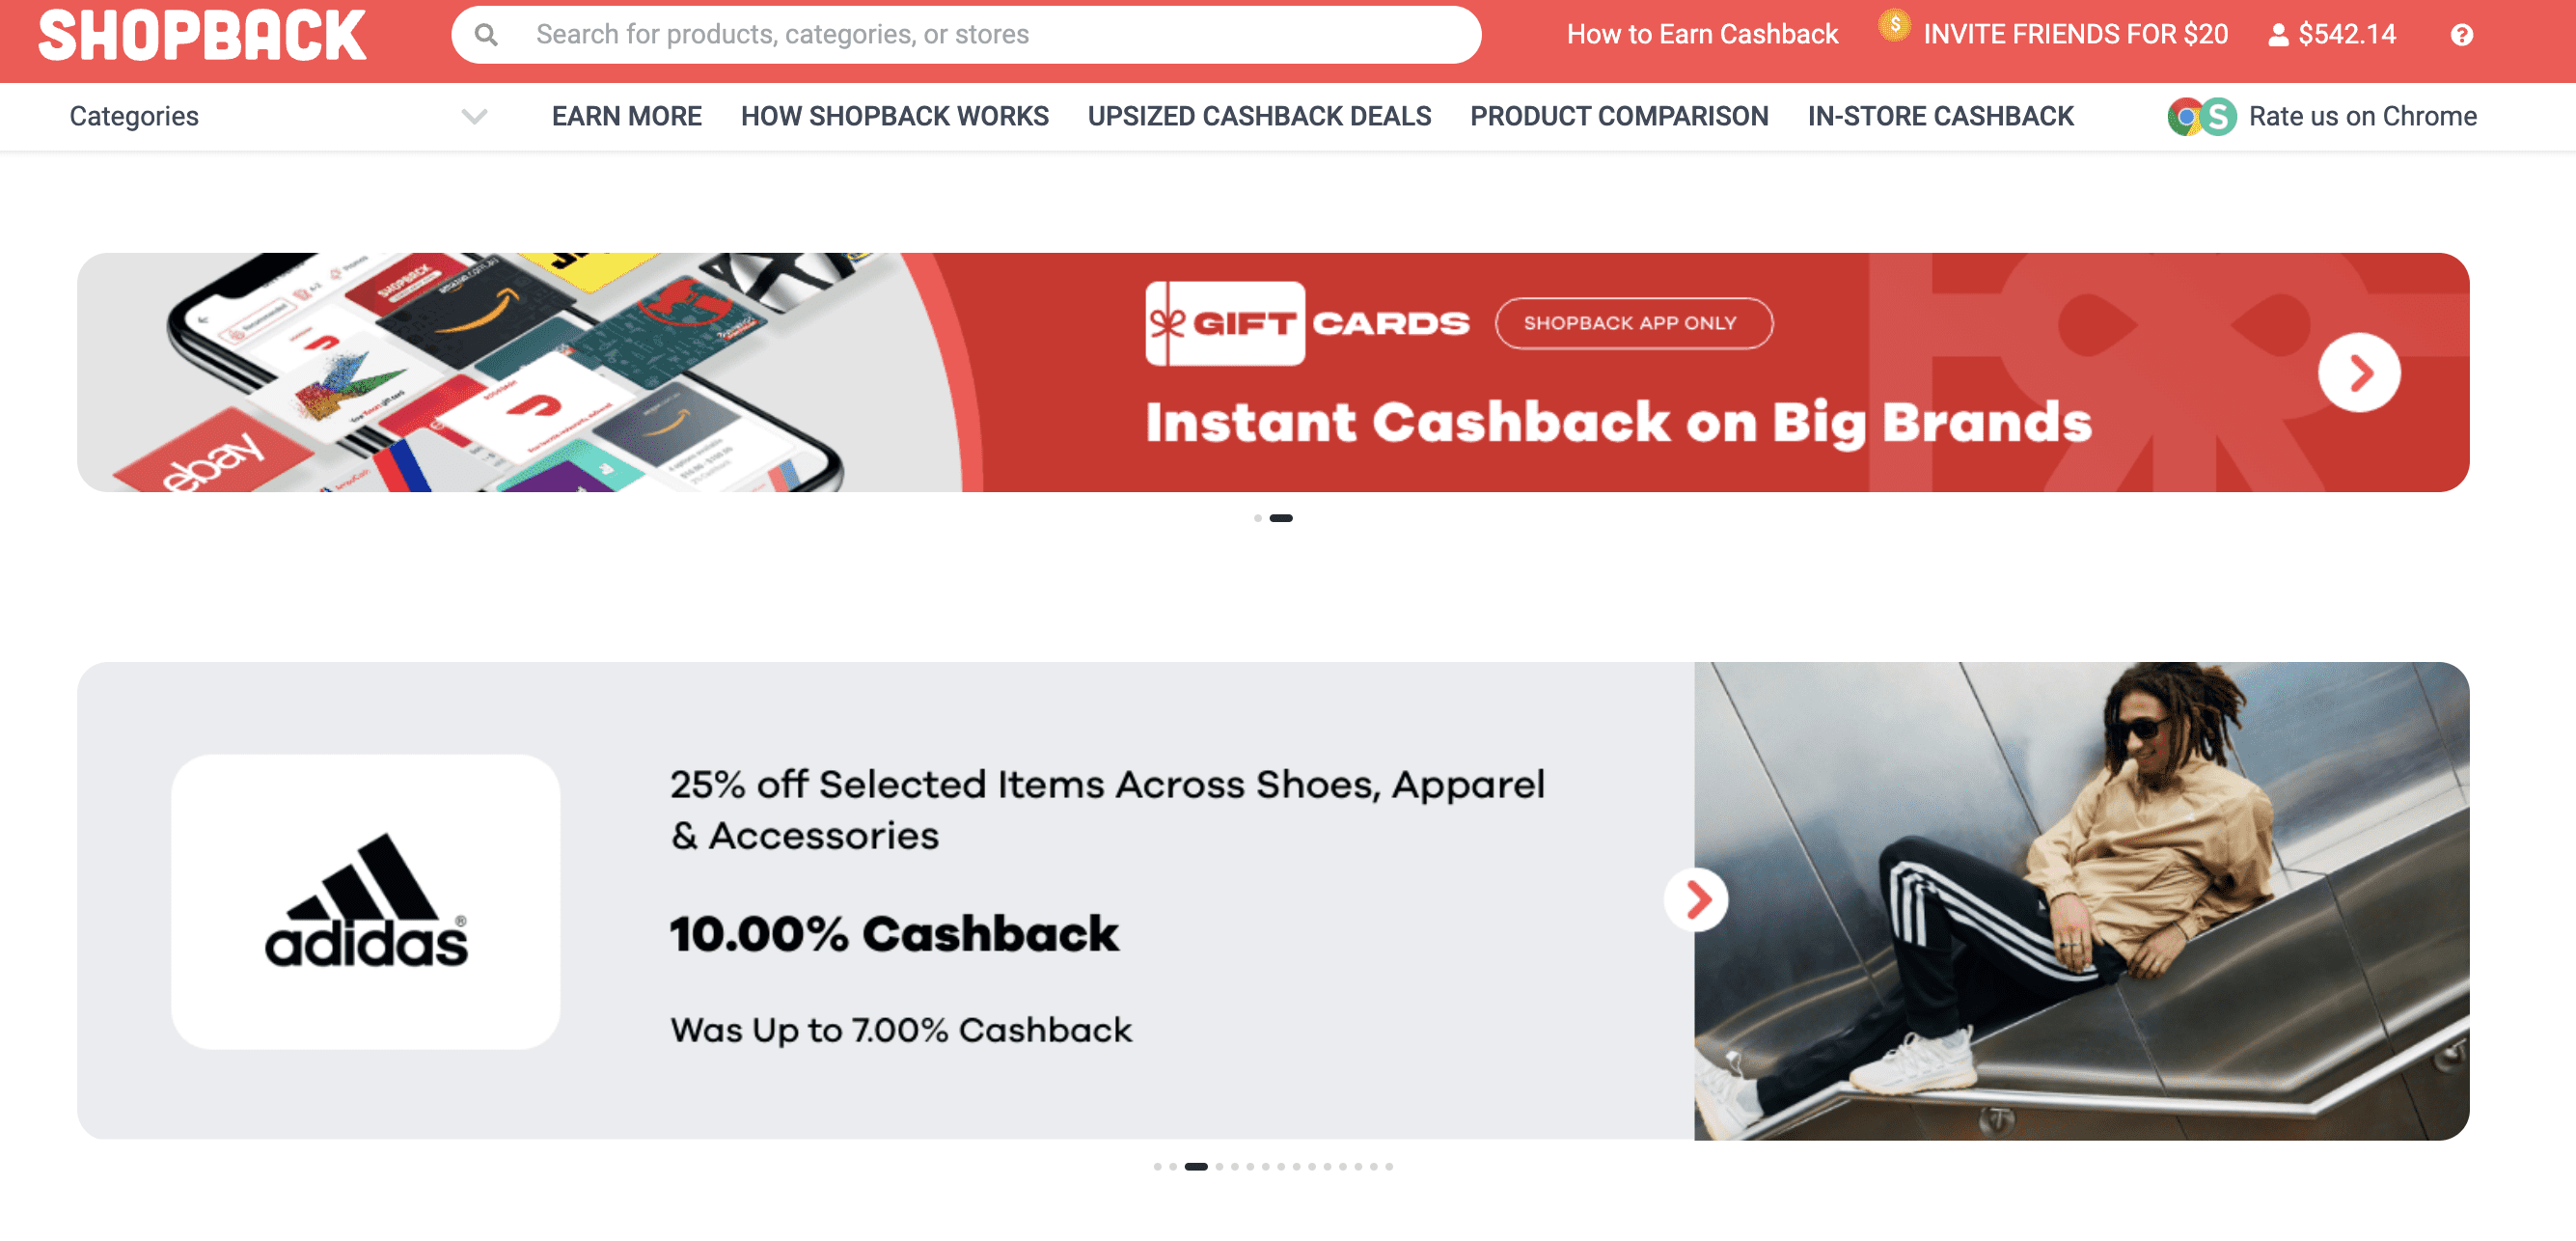 Shopback Cash Back Website Review